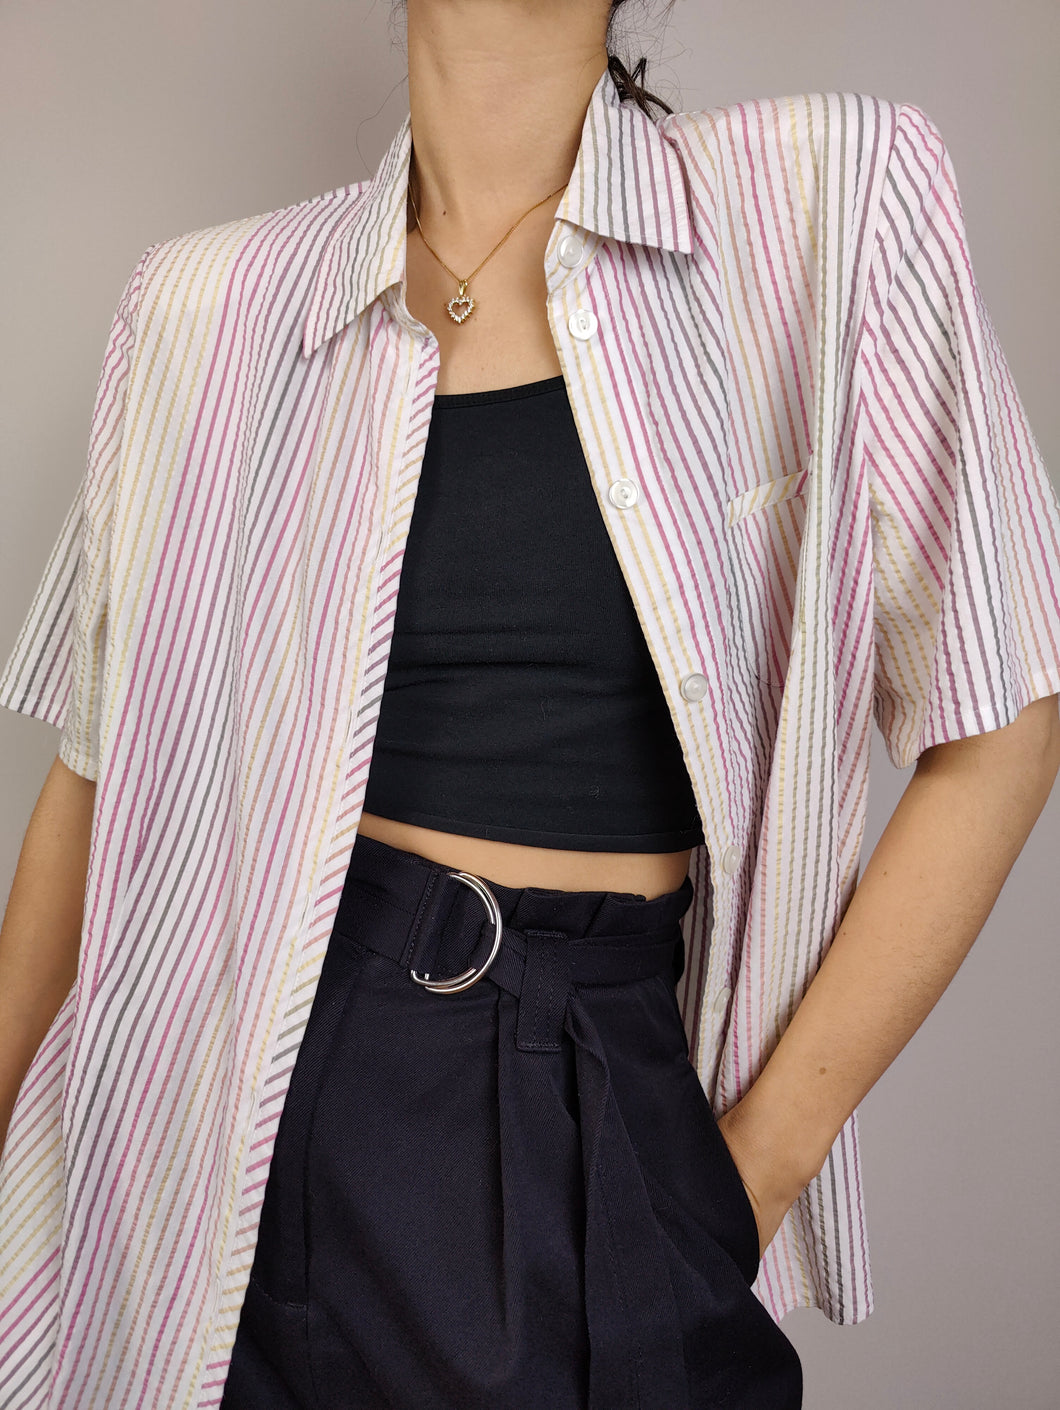 Das weiß-rosa gestreifte Hemd | Vintage Bluse Regenbogen Streifen Muster Kurzarm Frau Damen Damen 40 M